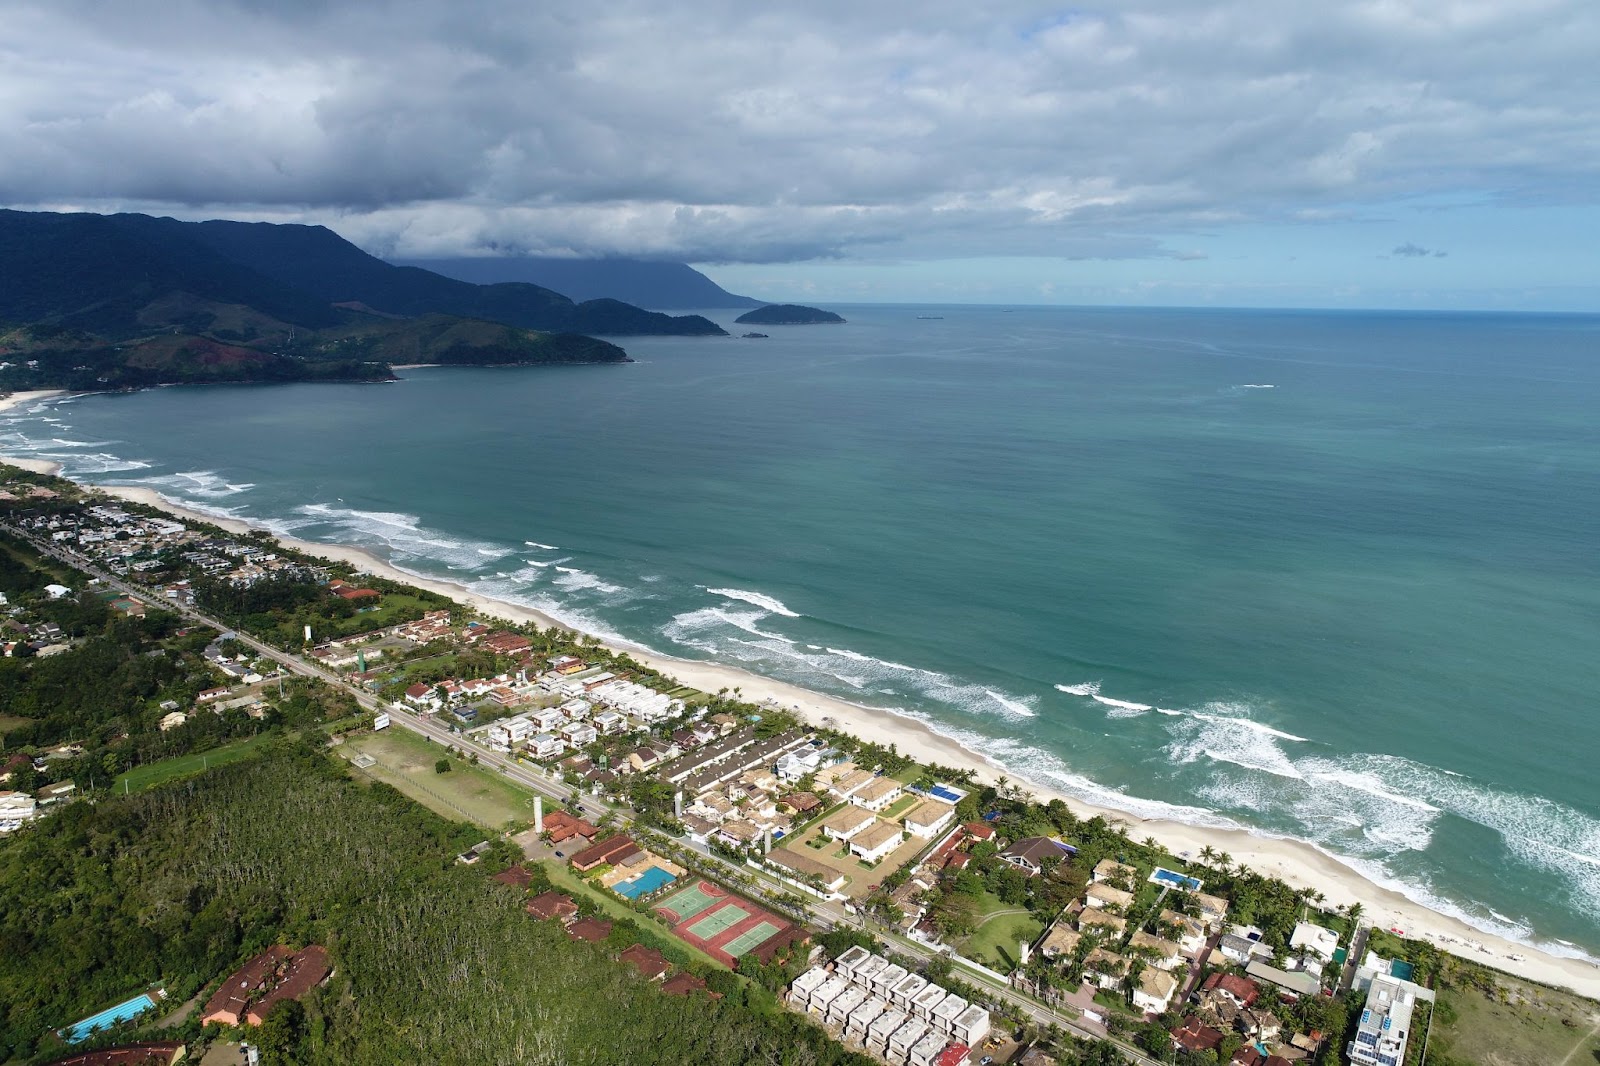 Vista aérea da Praia de Maresias, em São Sebastião. A longa faixa de areia branca é limitada pela água azul do mar e por uma fileira de construções baixas.